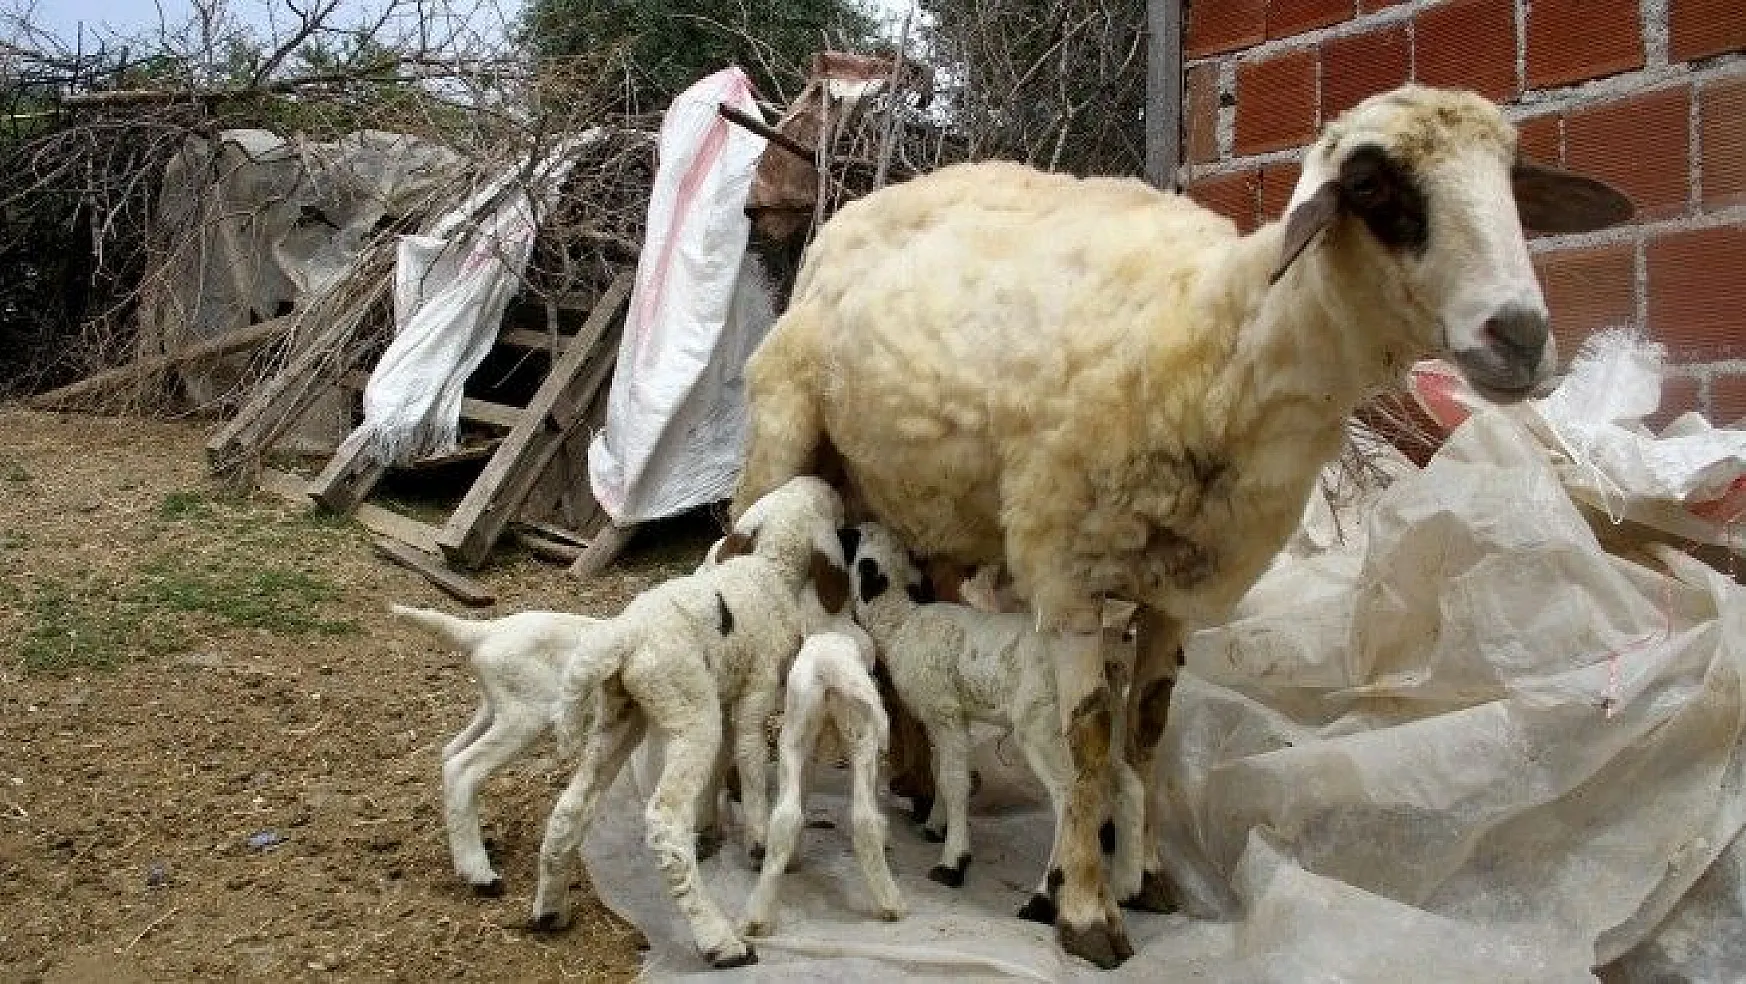 Bir batında 7 kuzu doğuran koyun şaşırttı